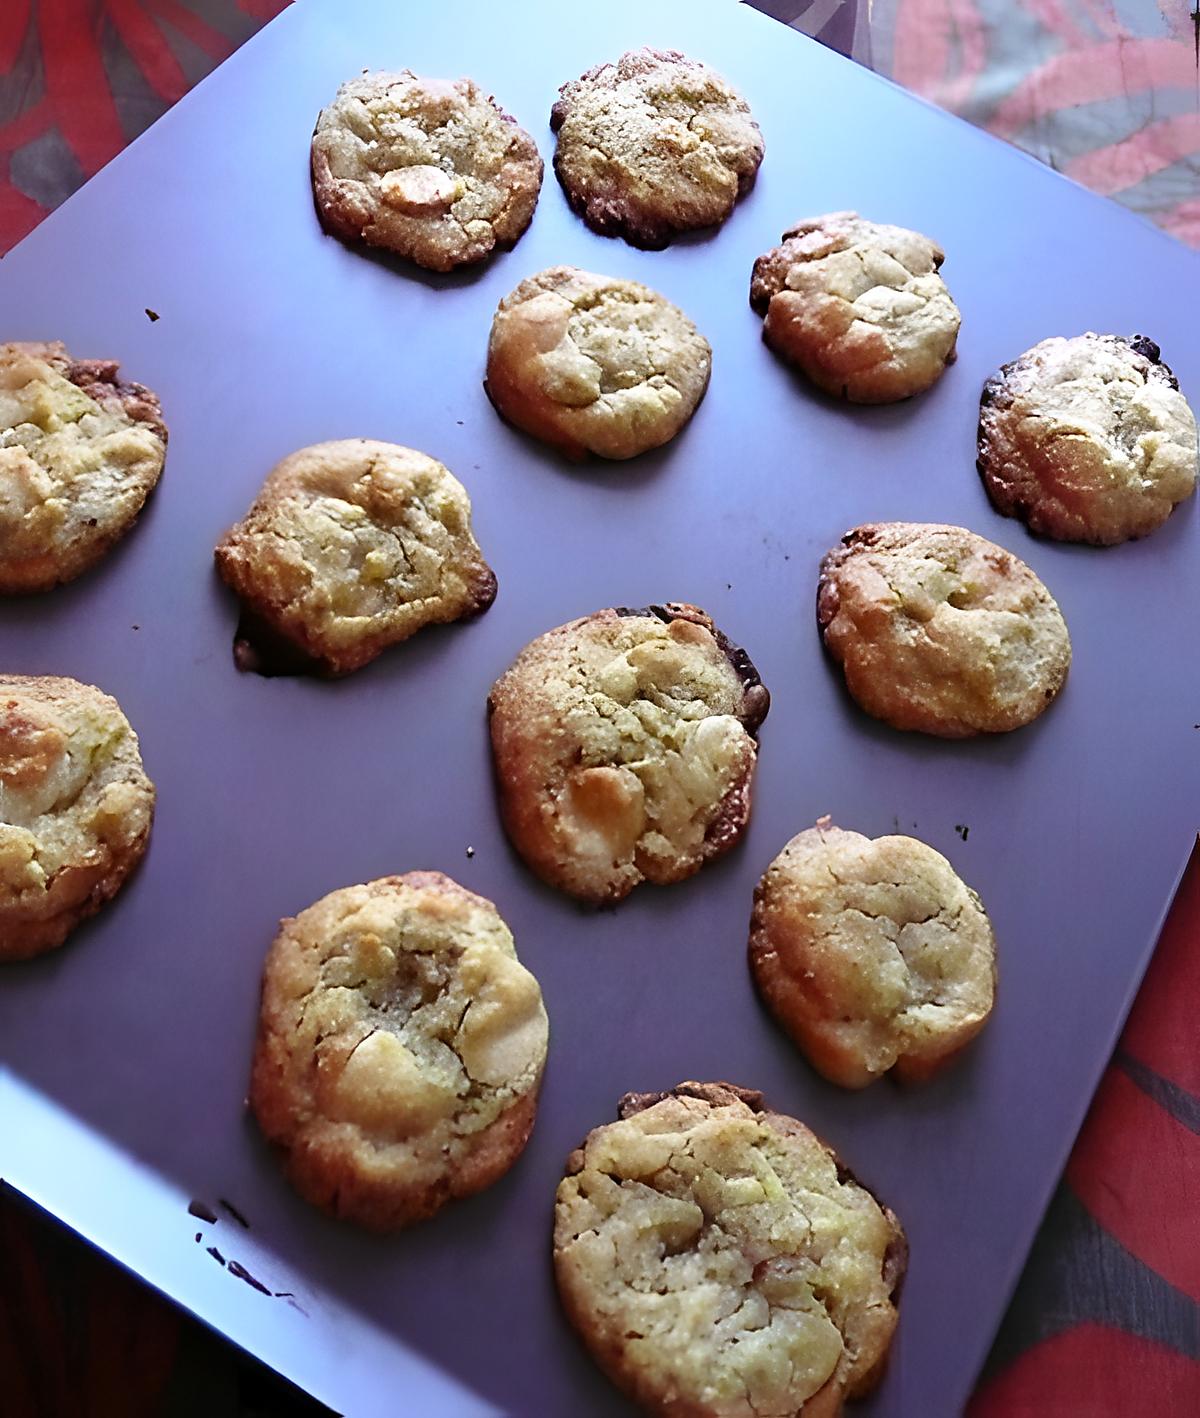 recette Cookies chocolat blanc & pistaches